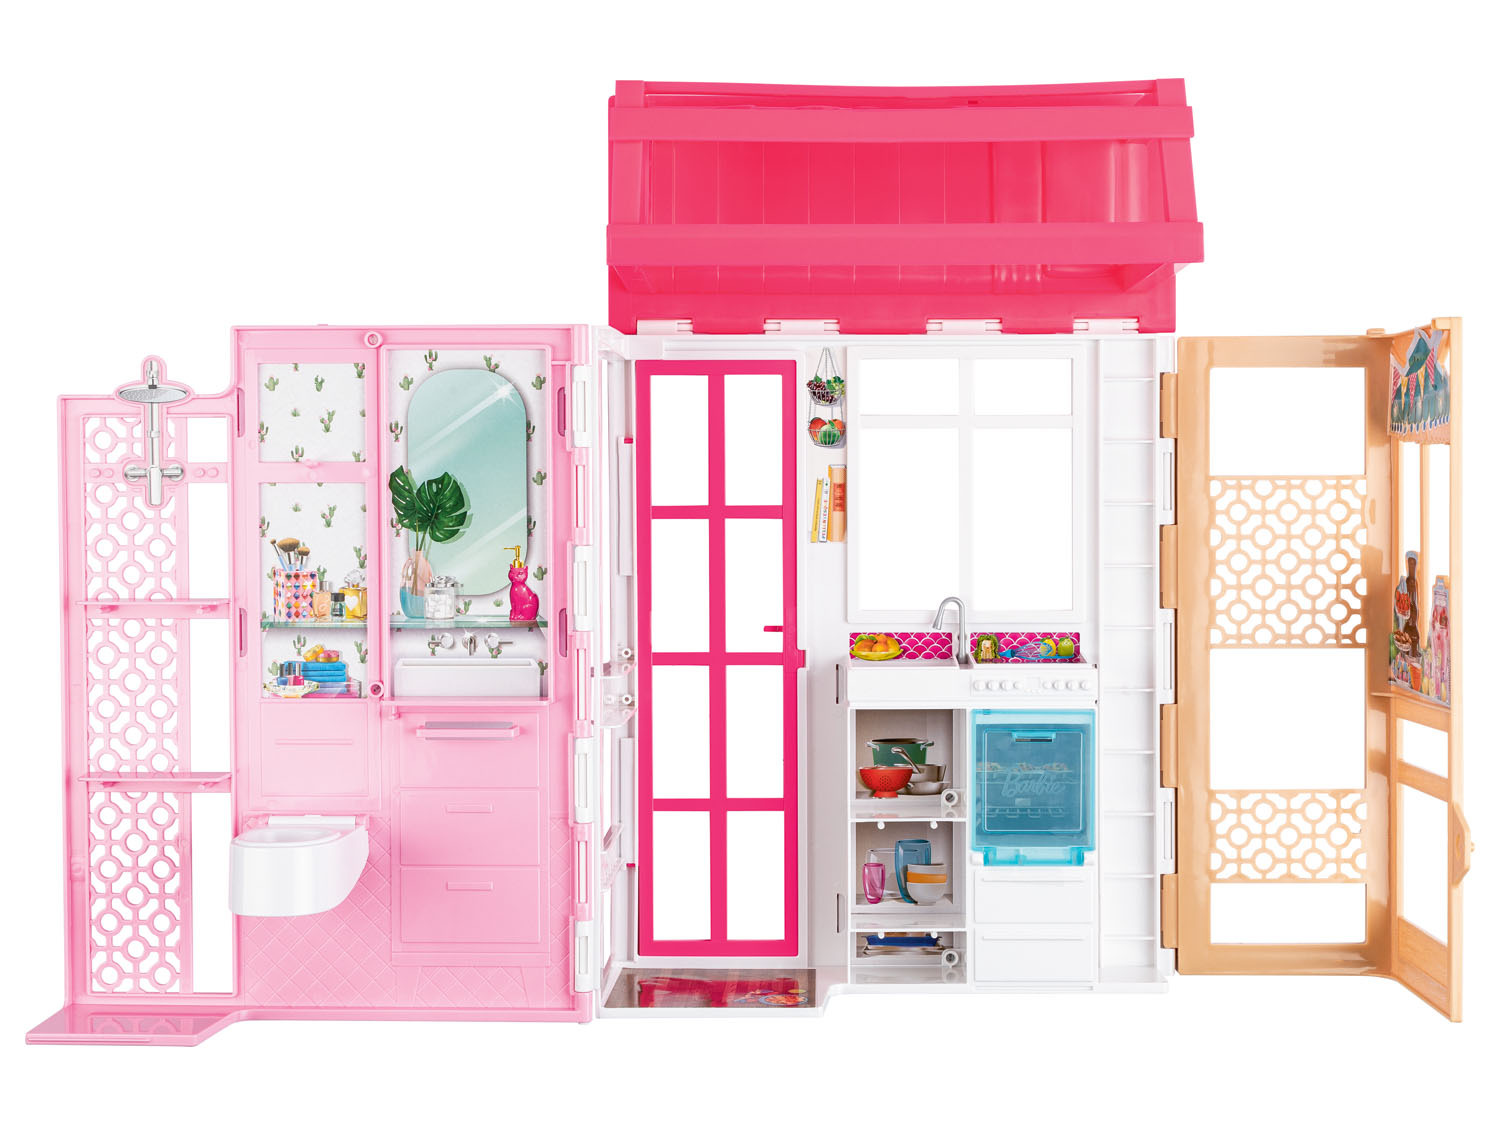 Barbie Maison de vacances acheter en ligne sur